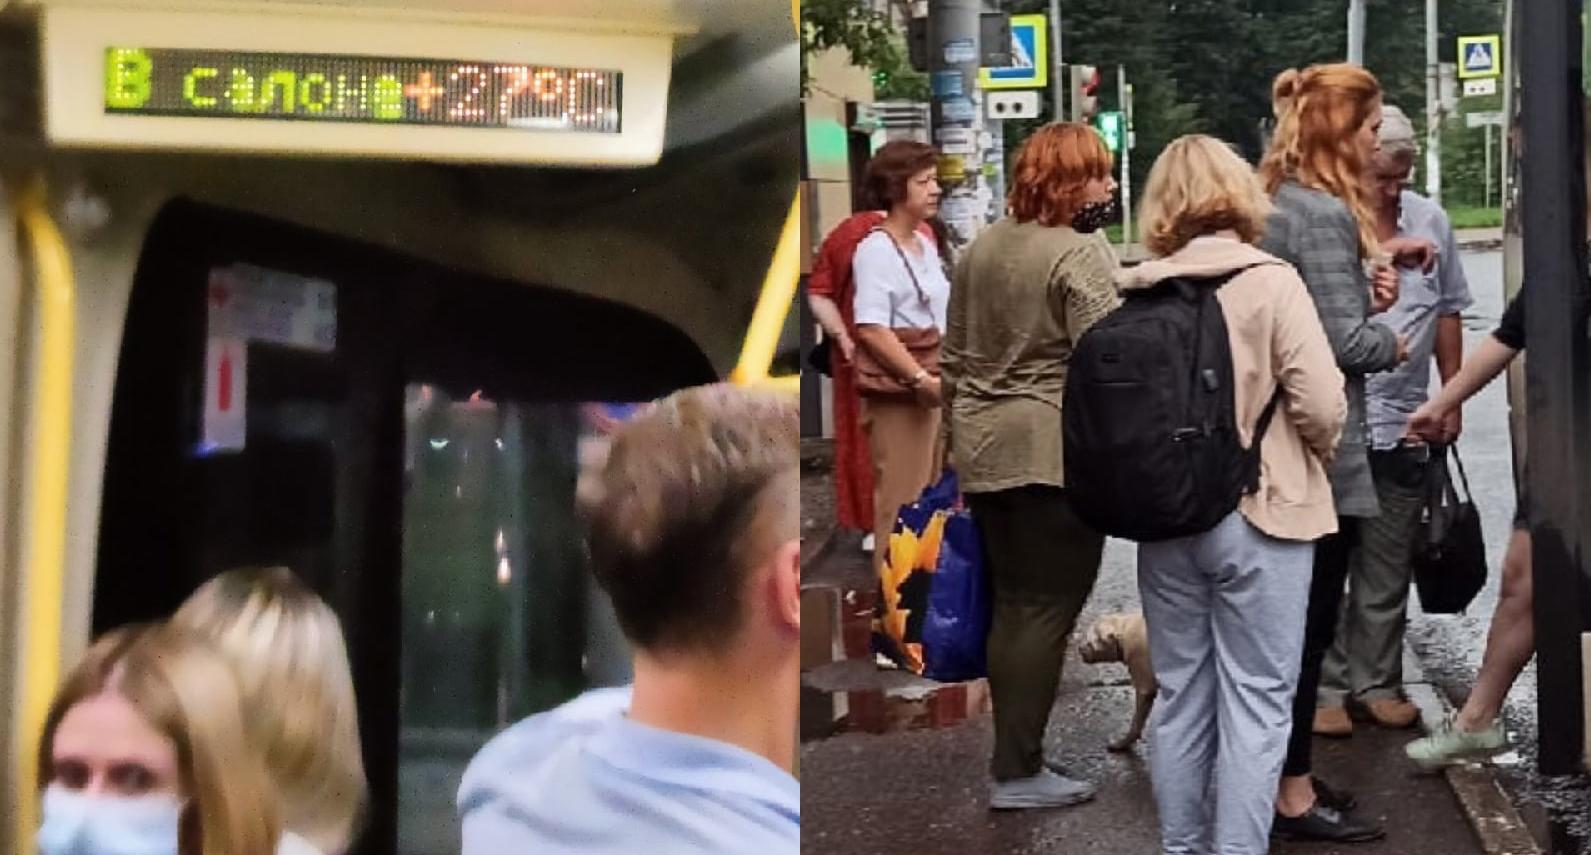  "Адова преисподняя": пассажиры в автобусе Ярославля пережили кошмар наяву